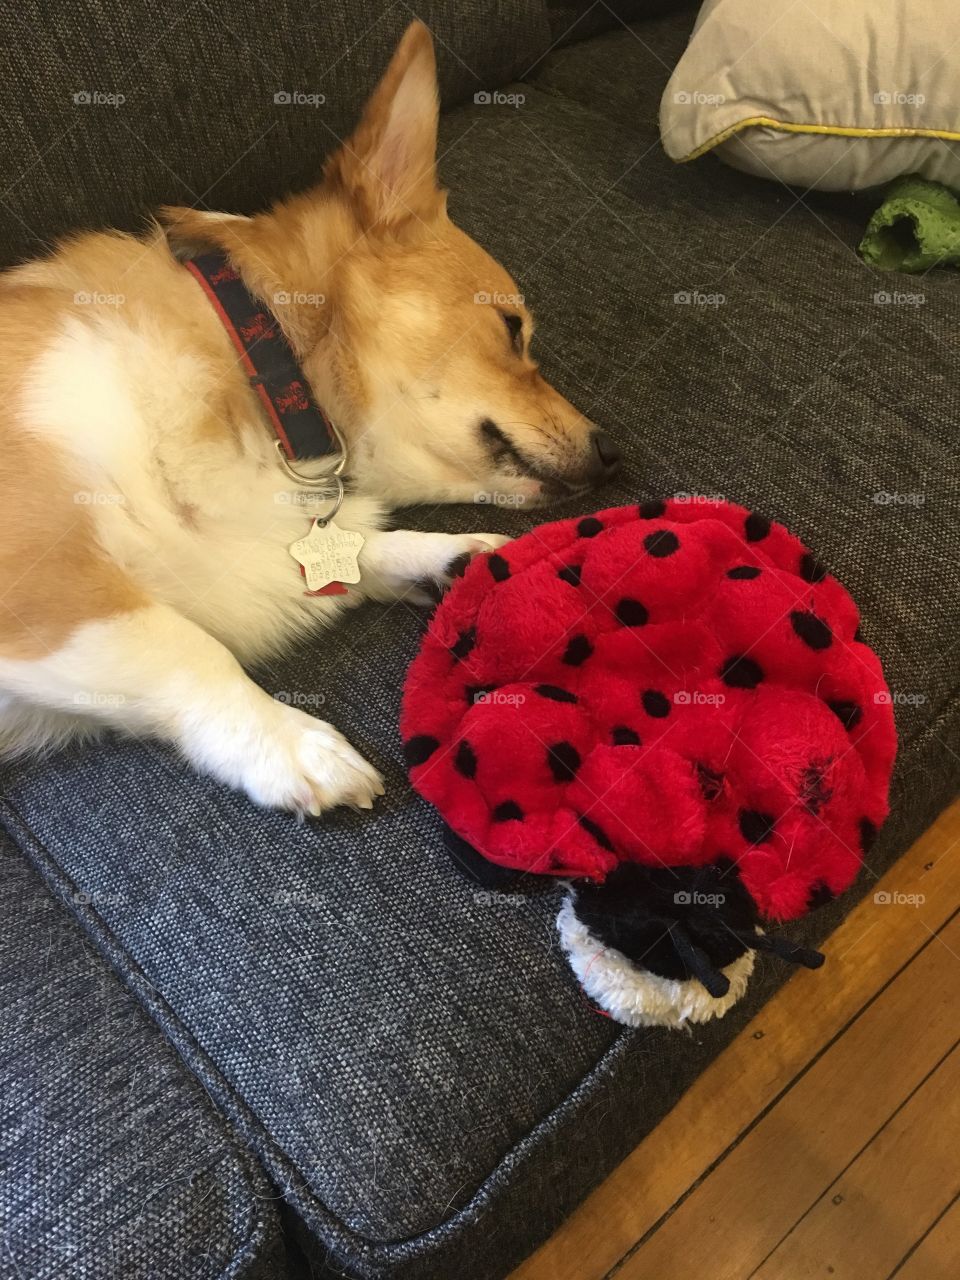 Sleepy corgi puppy with dog toy ladybug